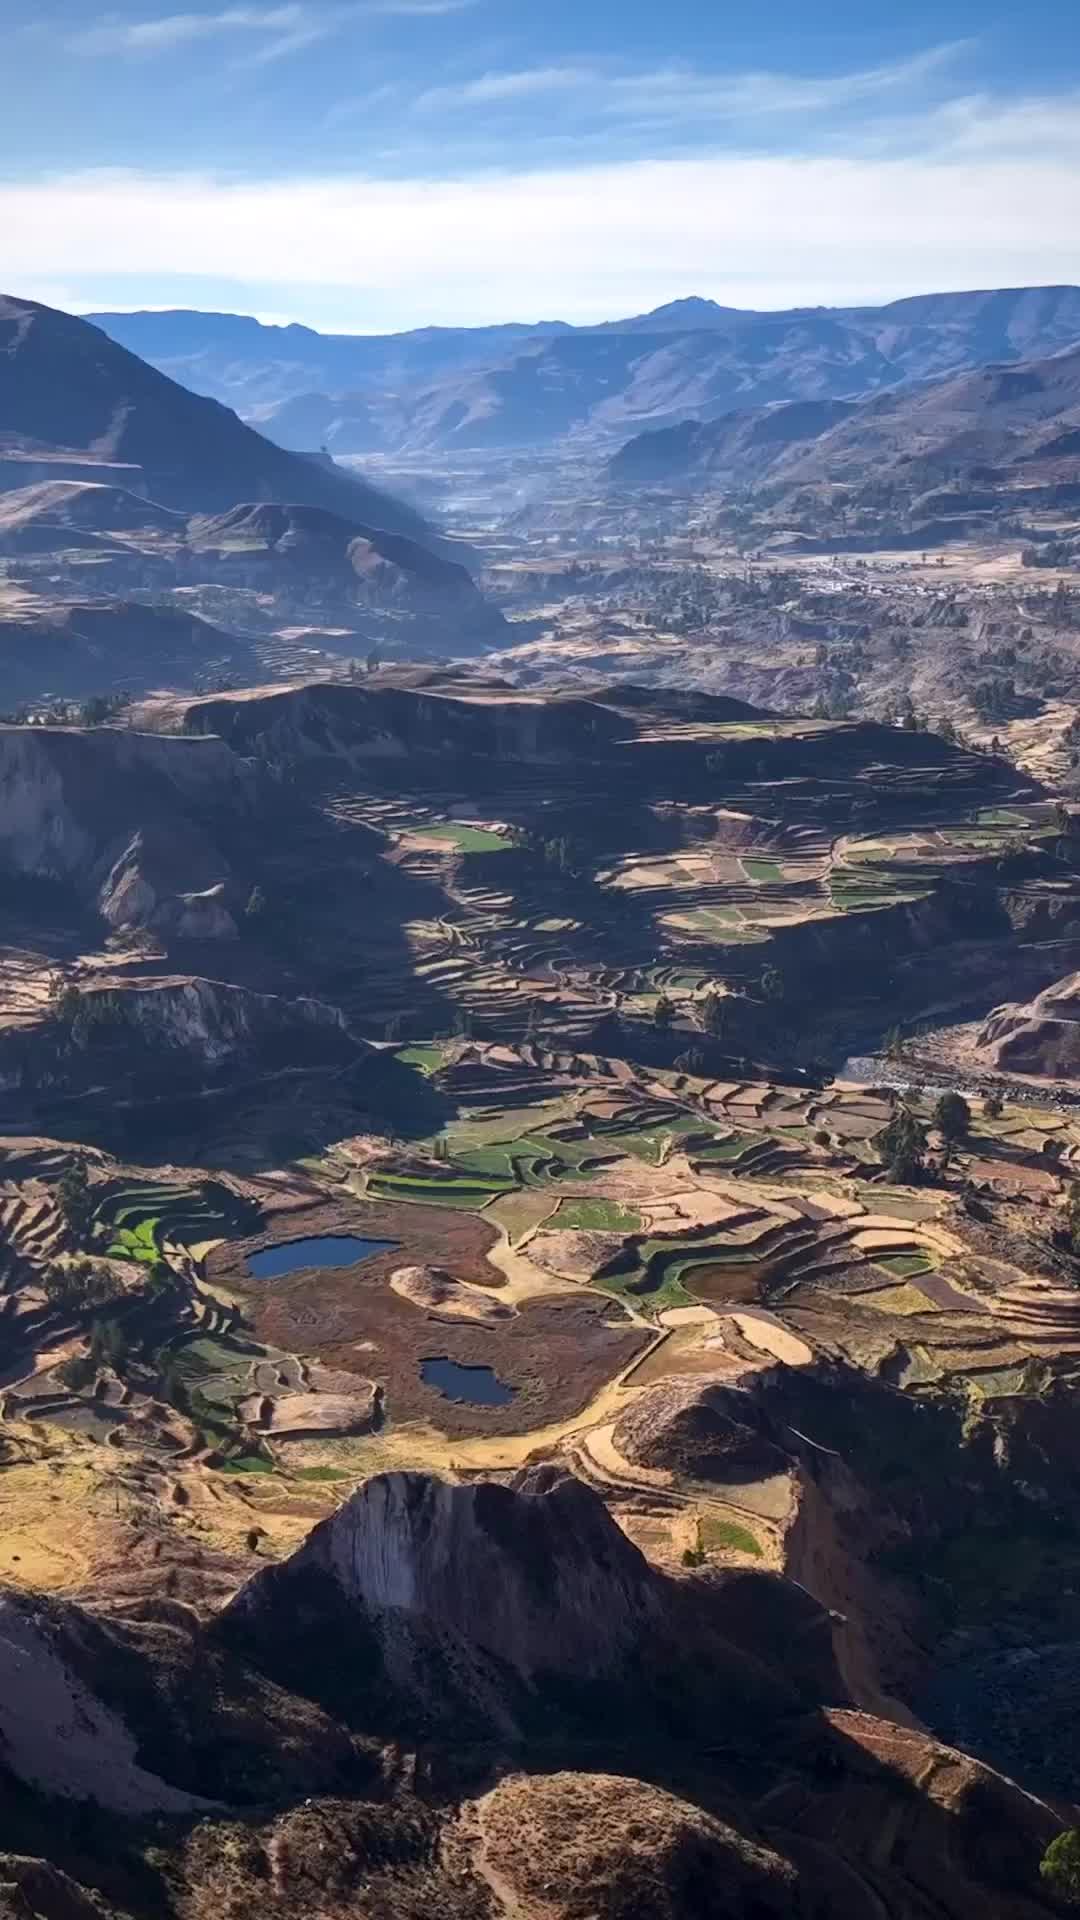 Discover Valle del Colca in Peru | Scenic Drone Views